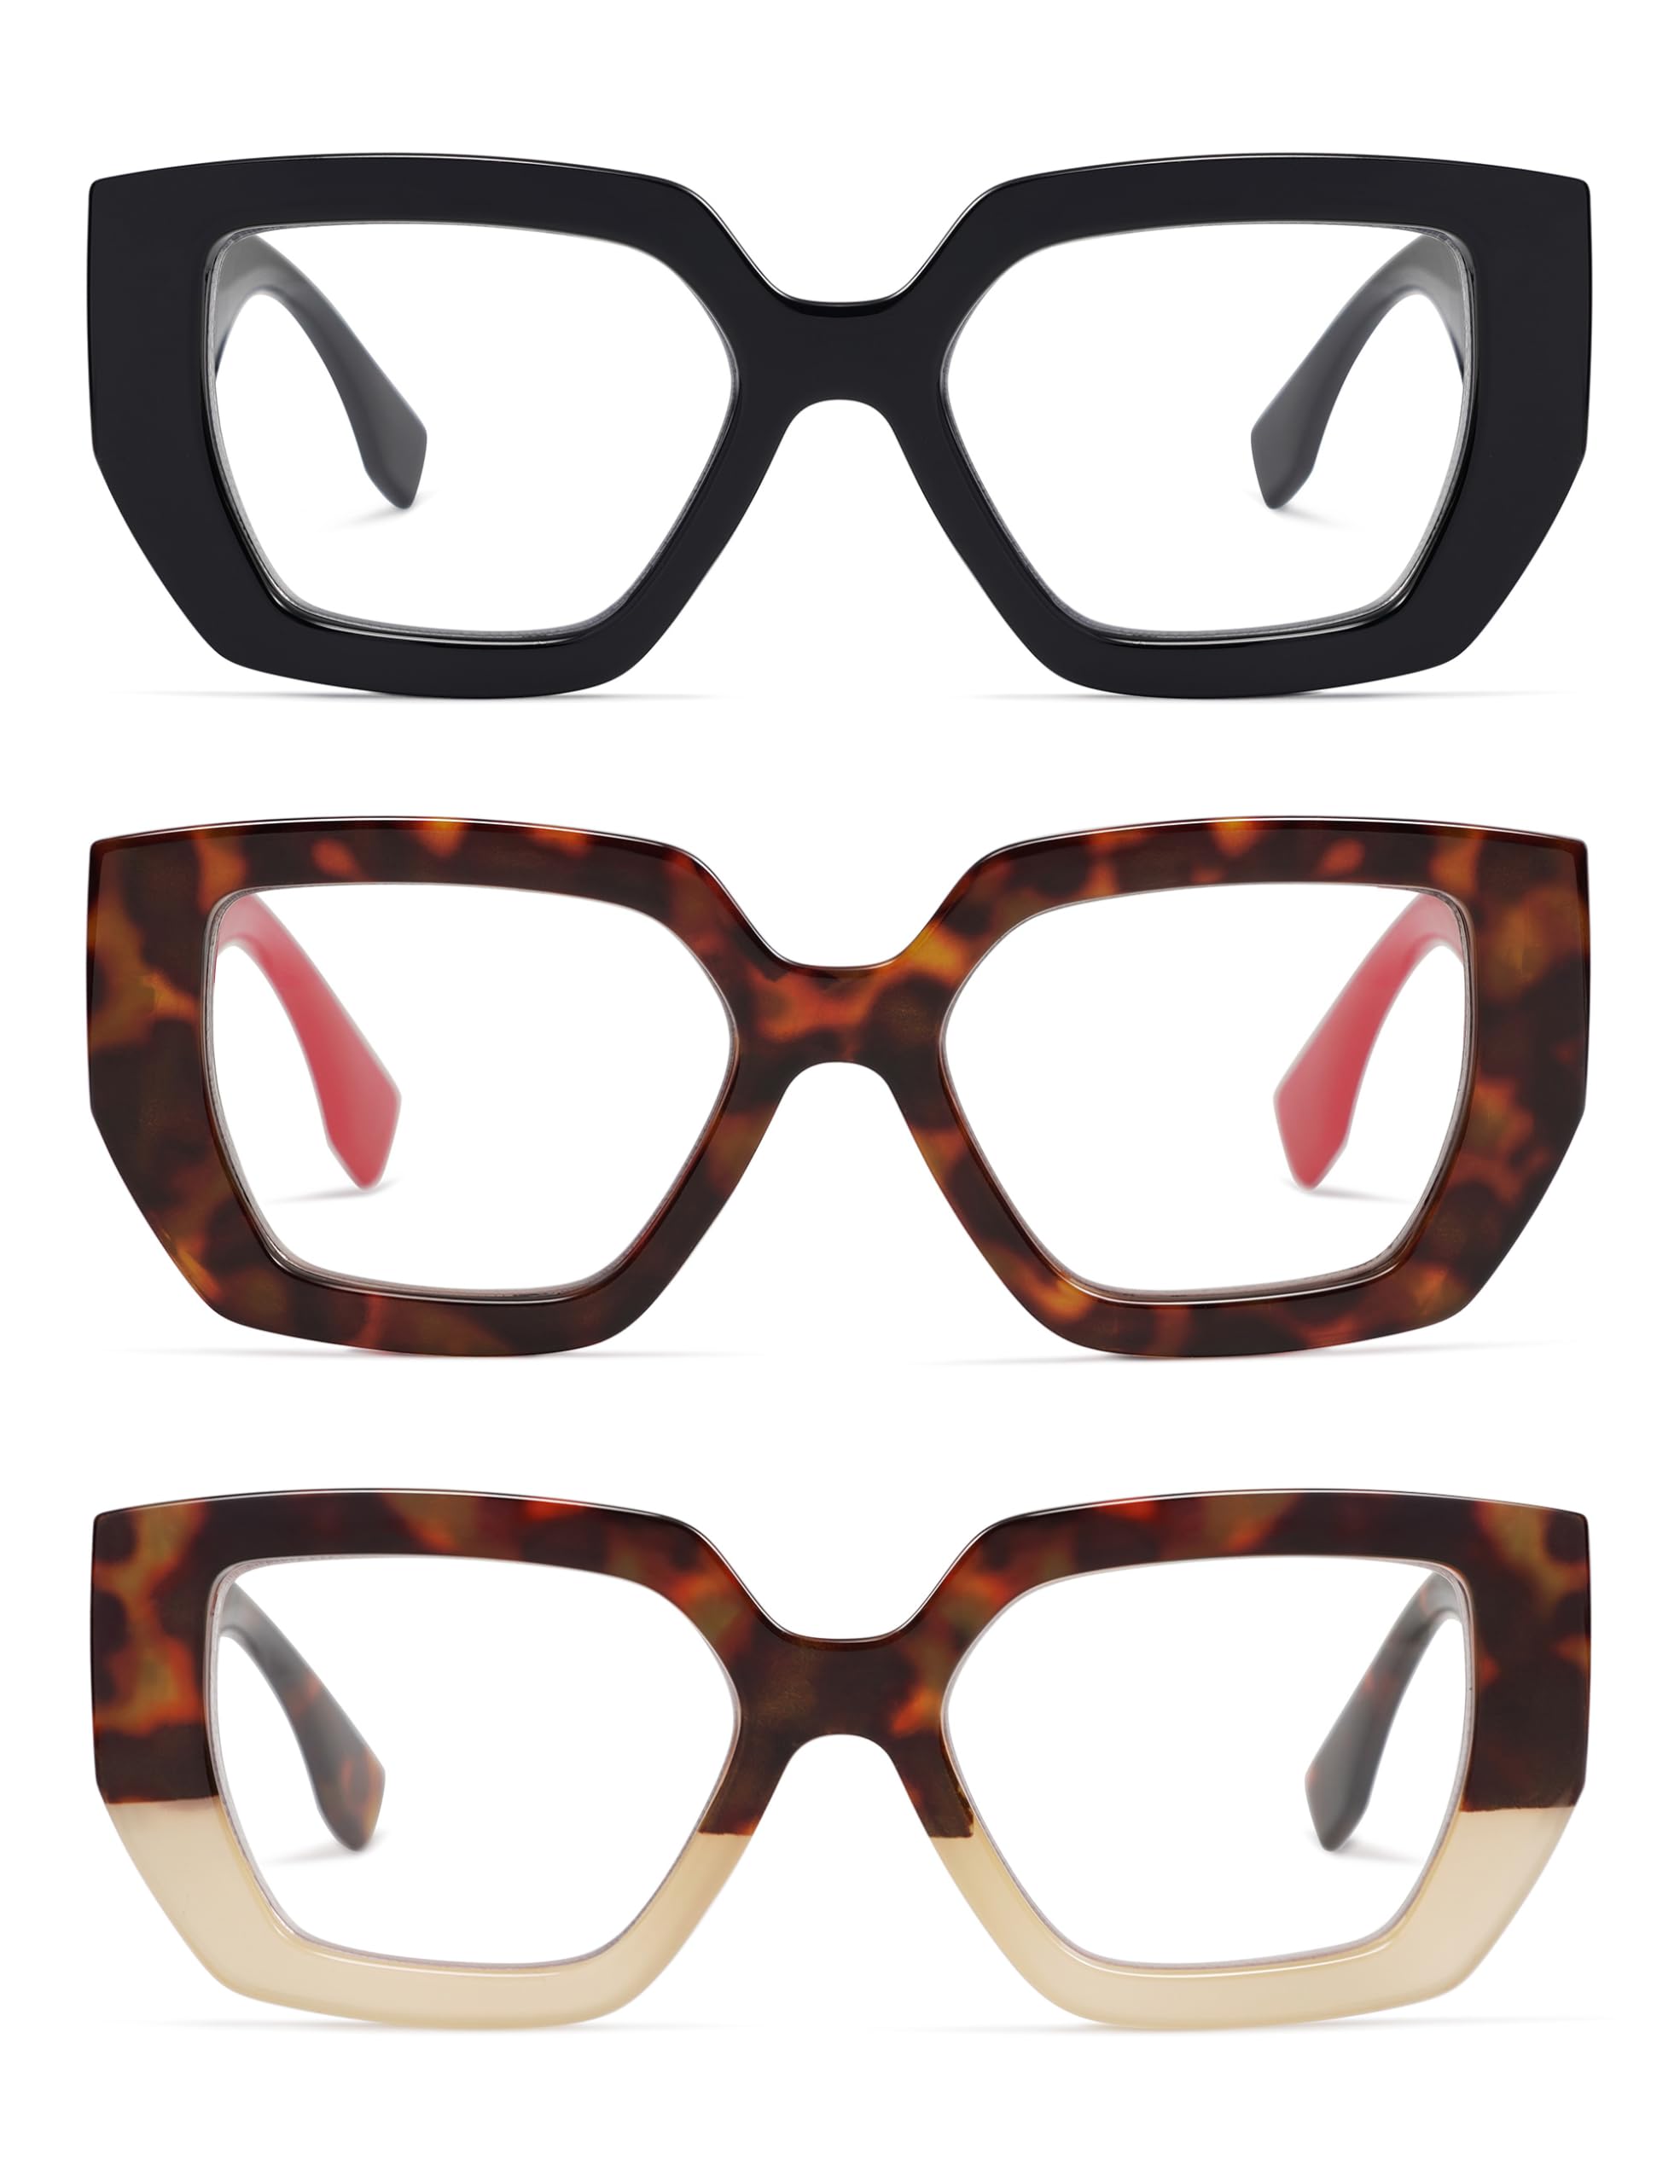 AMOMOMA 3-Pack Oversized Square Reading Glasses for Women,Fashion Trendy Style Blue Light Blocking Eyewear Readers Large Frame with Spring Hinge AM6109 C1+C3+C4 1.0 x